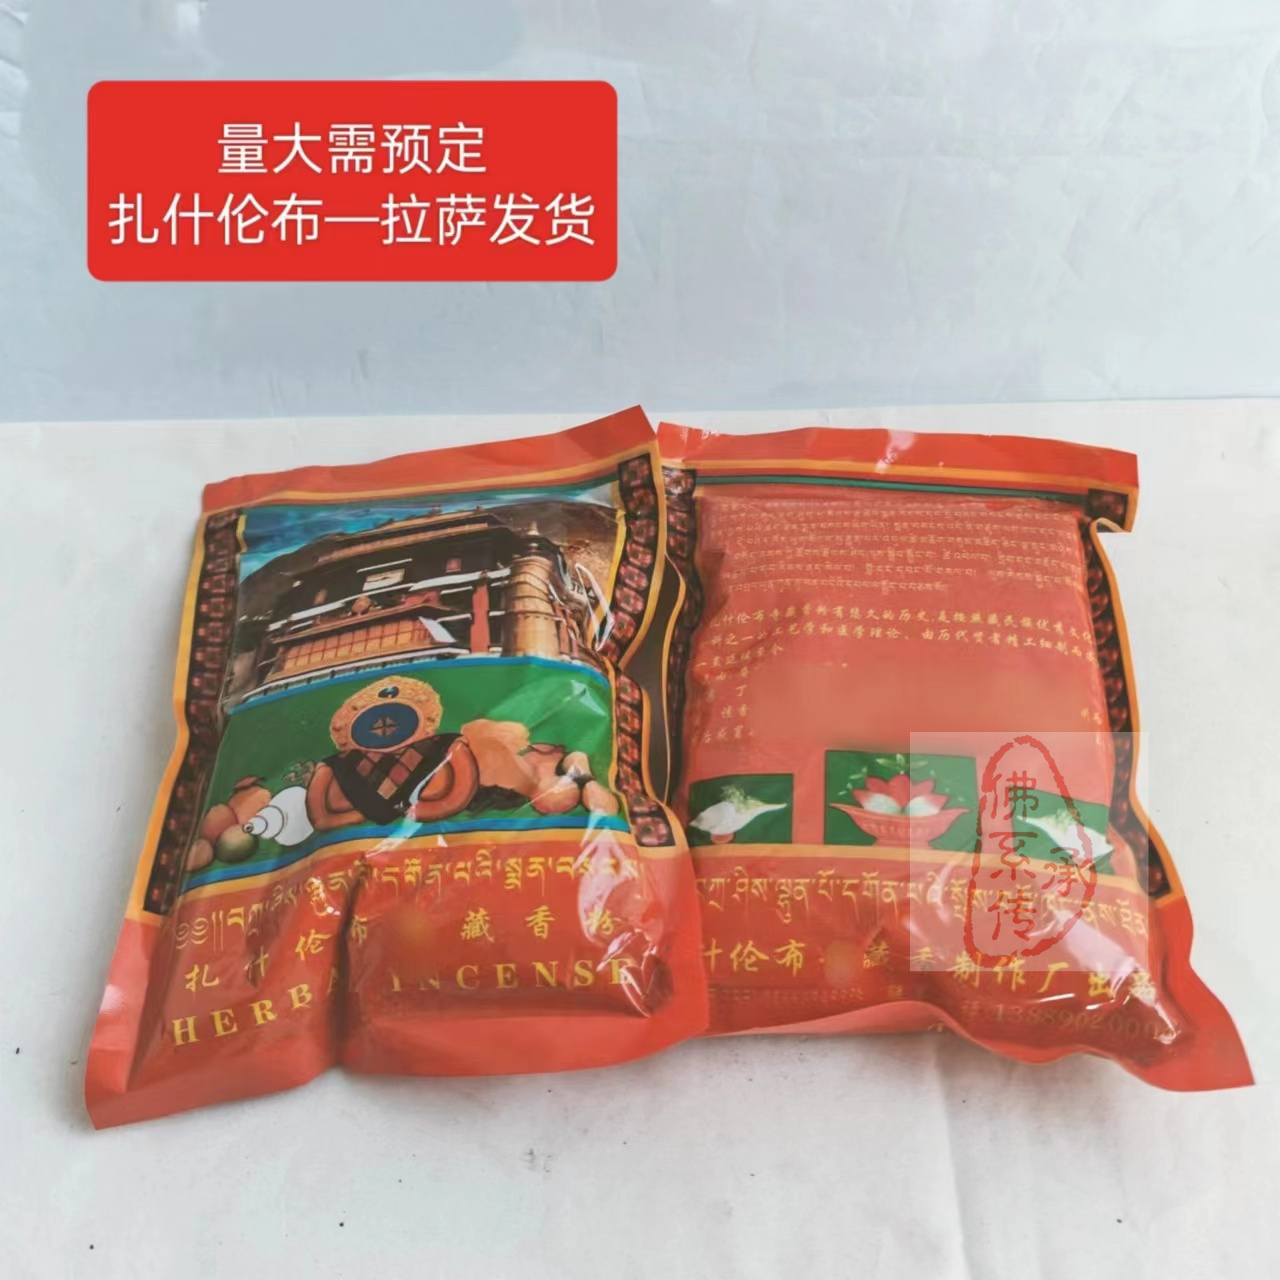 西藏扎什伦布g虔制藏香纯天然手工供奉品护法 藏药熏香粉 10包邮